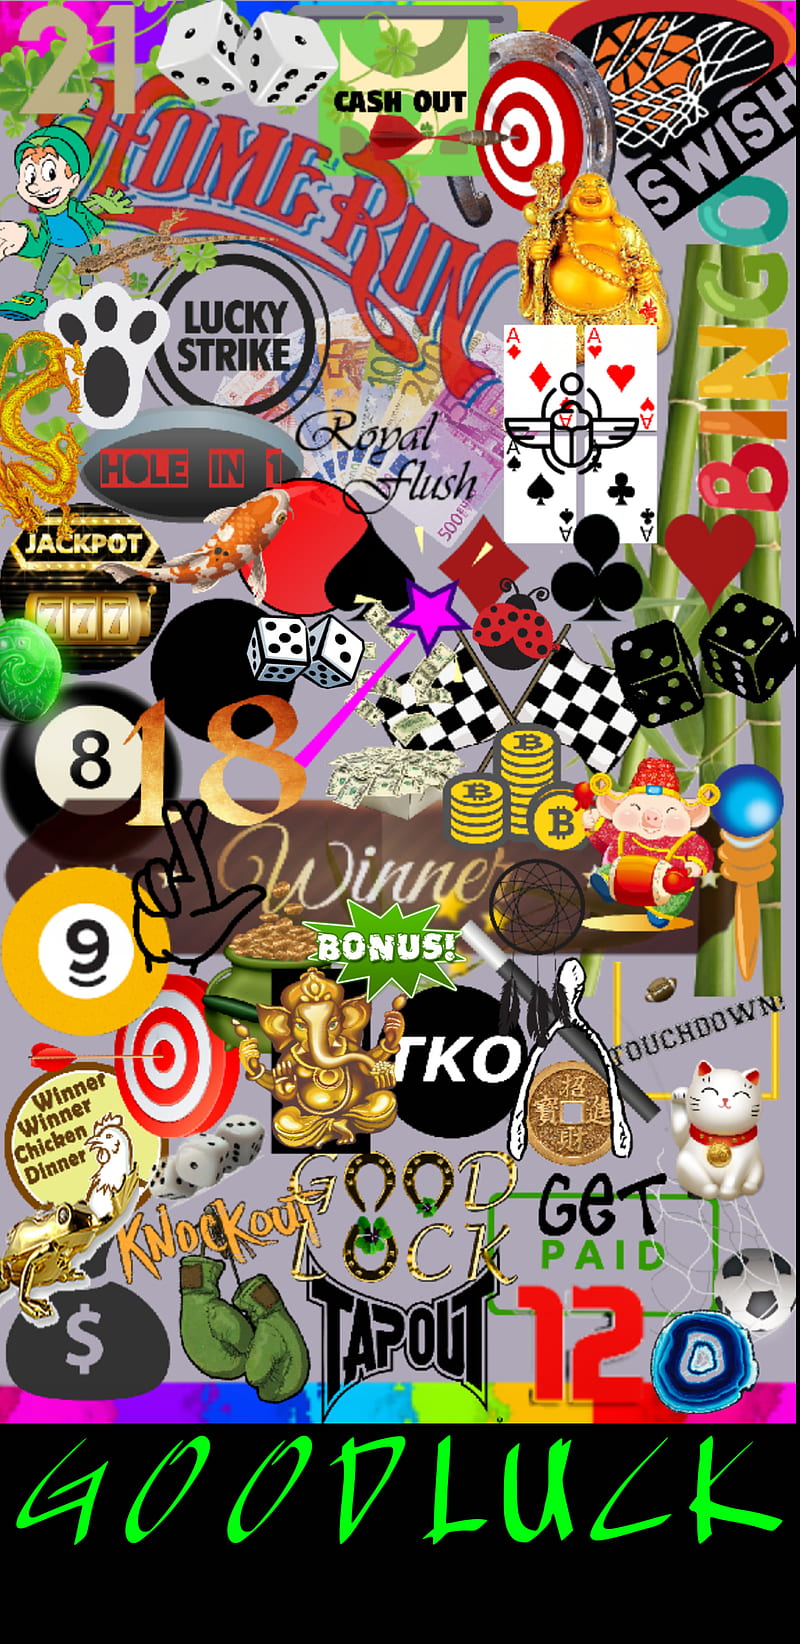 GOODLUCK, gamble, jackpot, luck, lucky, win, HD phone wallpaper | Peakpx